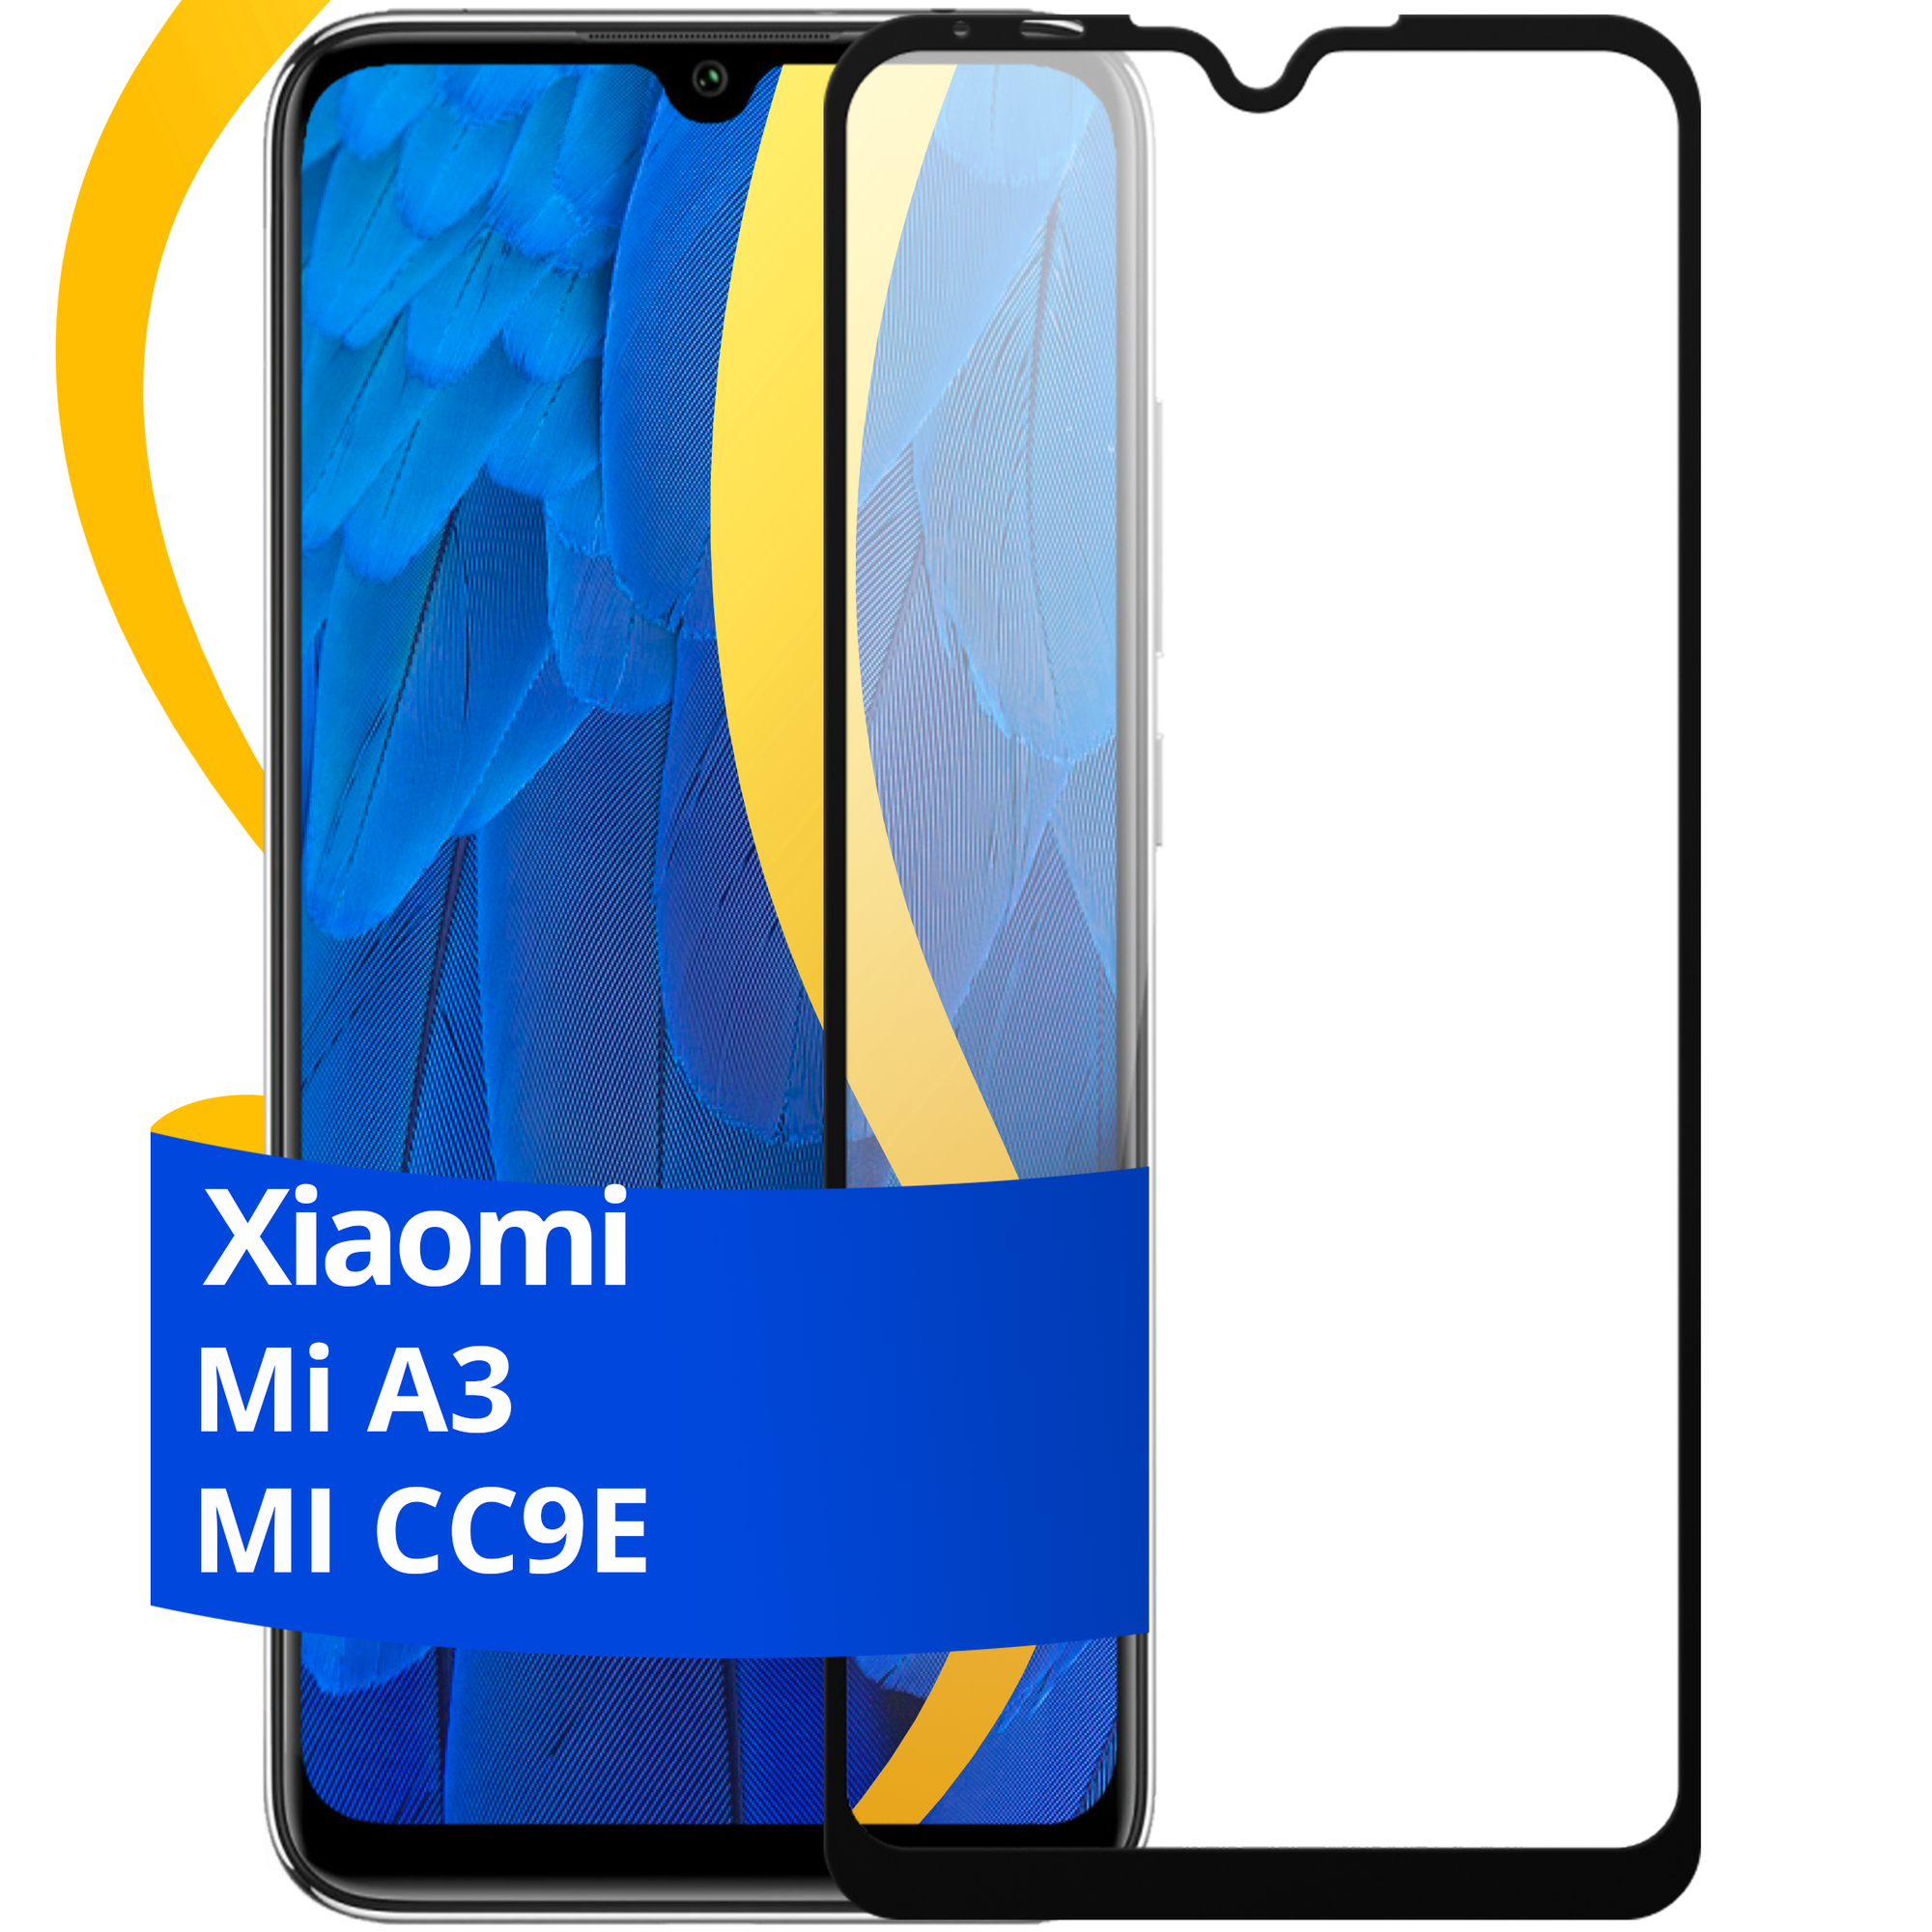 Полноэкранное защитное стекло на телефон Xiaomi Mi A3 и Mi CC9E / Противоударное стекло для смартфона Сяоми Ми А3 и Ми СС9Е с олеофобным покрытием